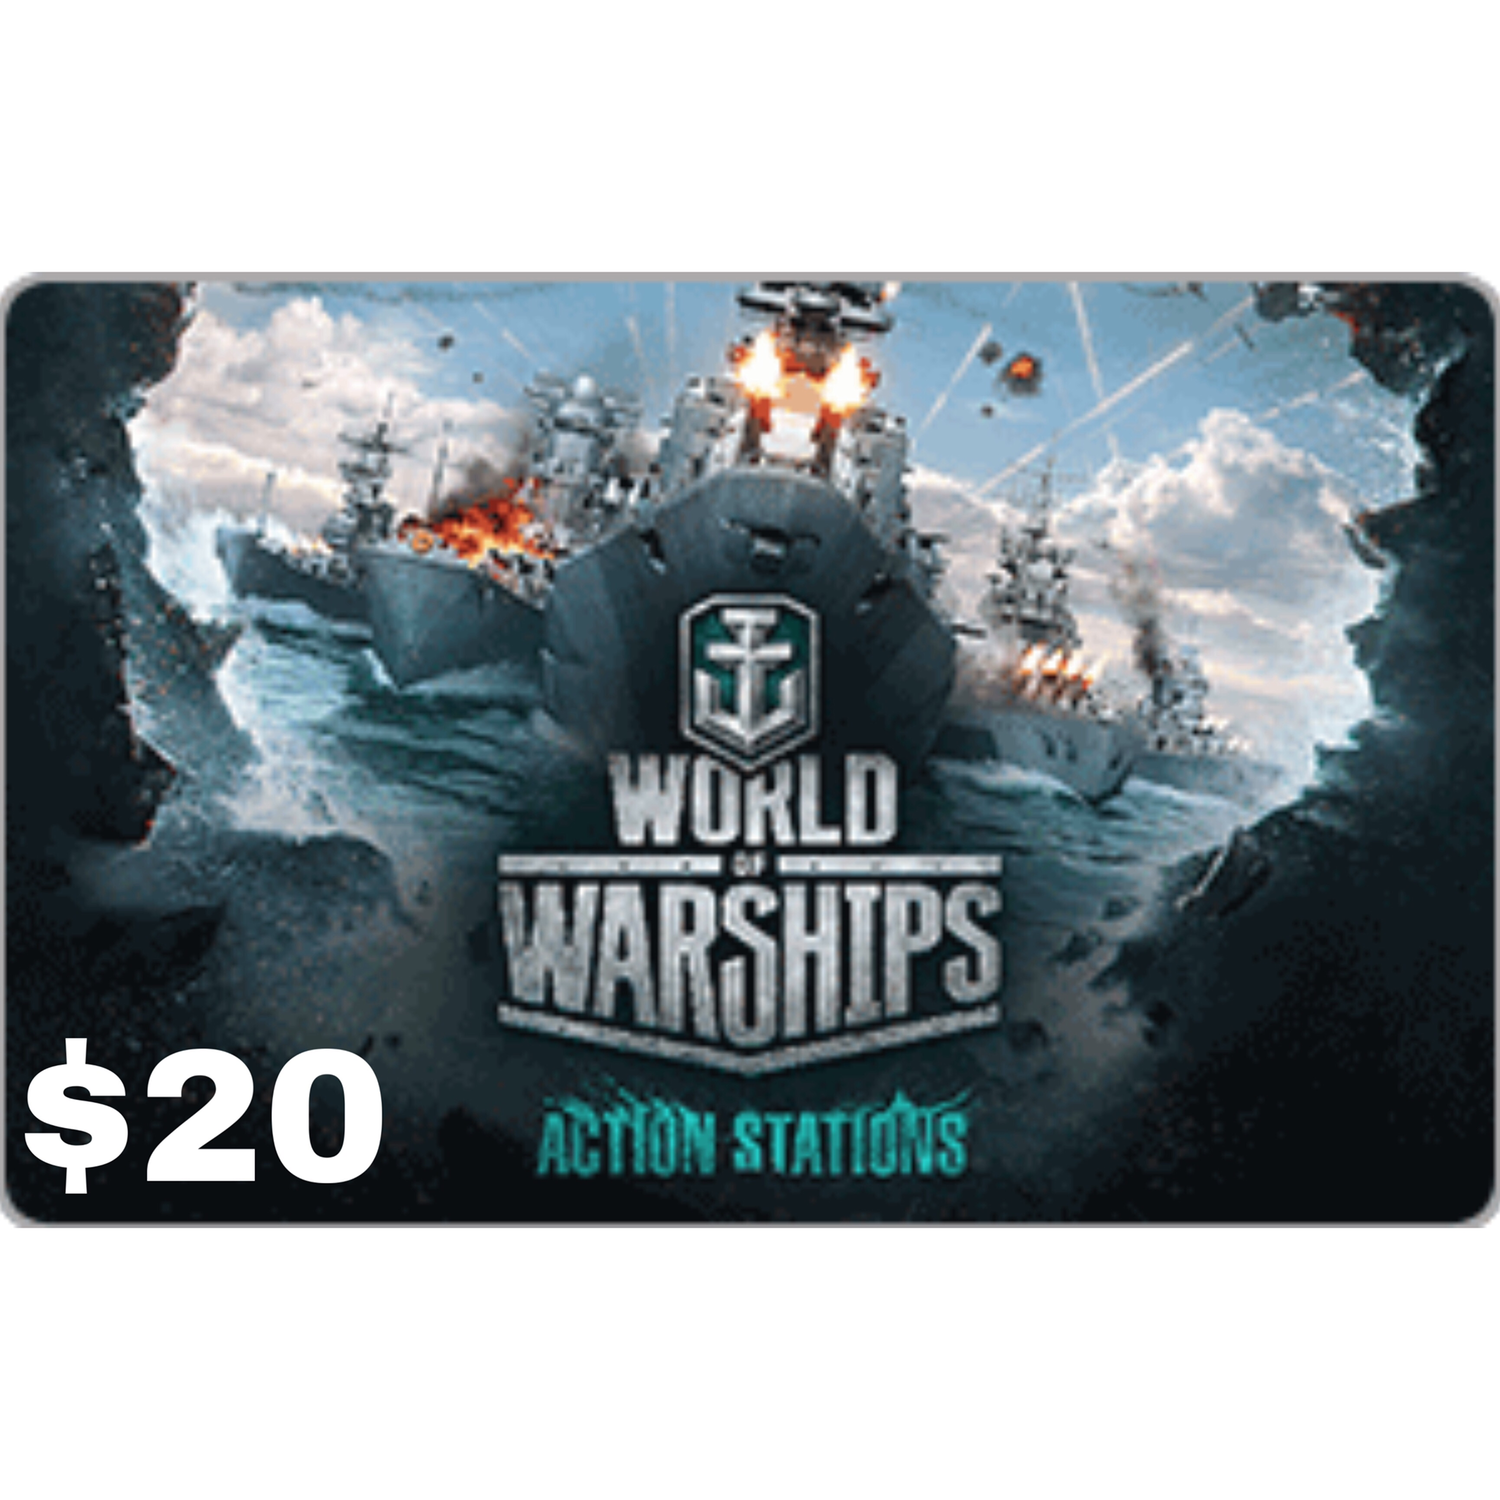 free 1 day premium code world of warships